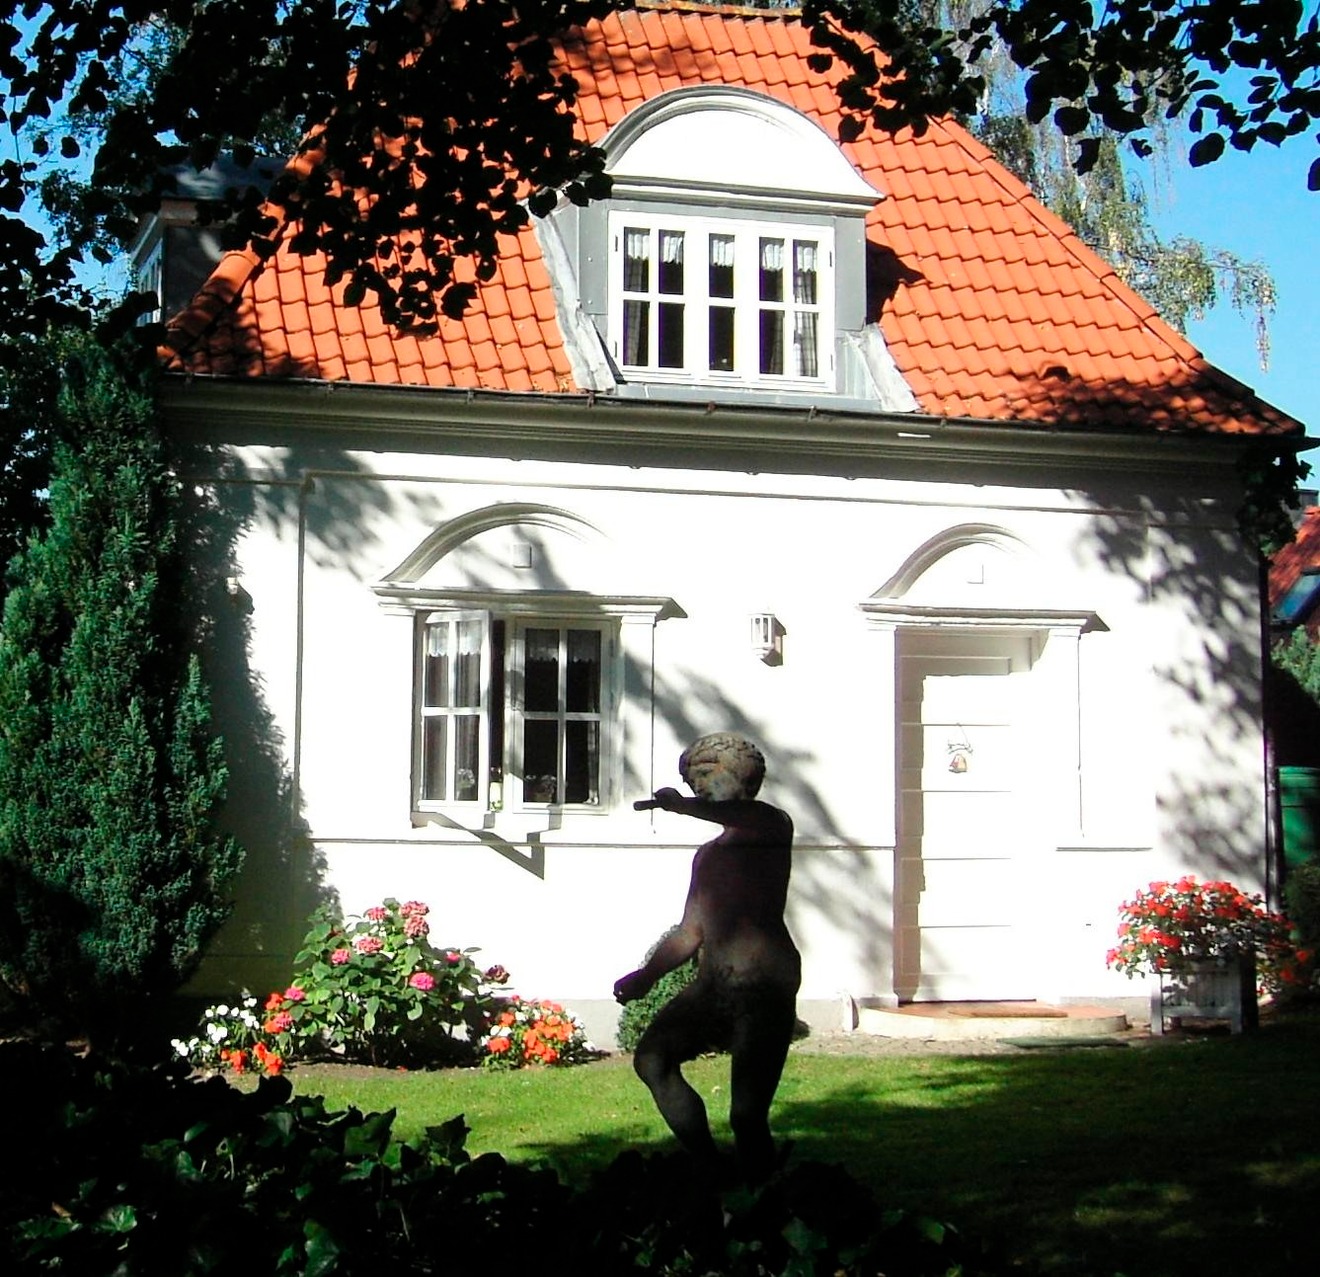 Simon Ferienhaus in Schleswig Holstein